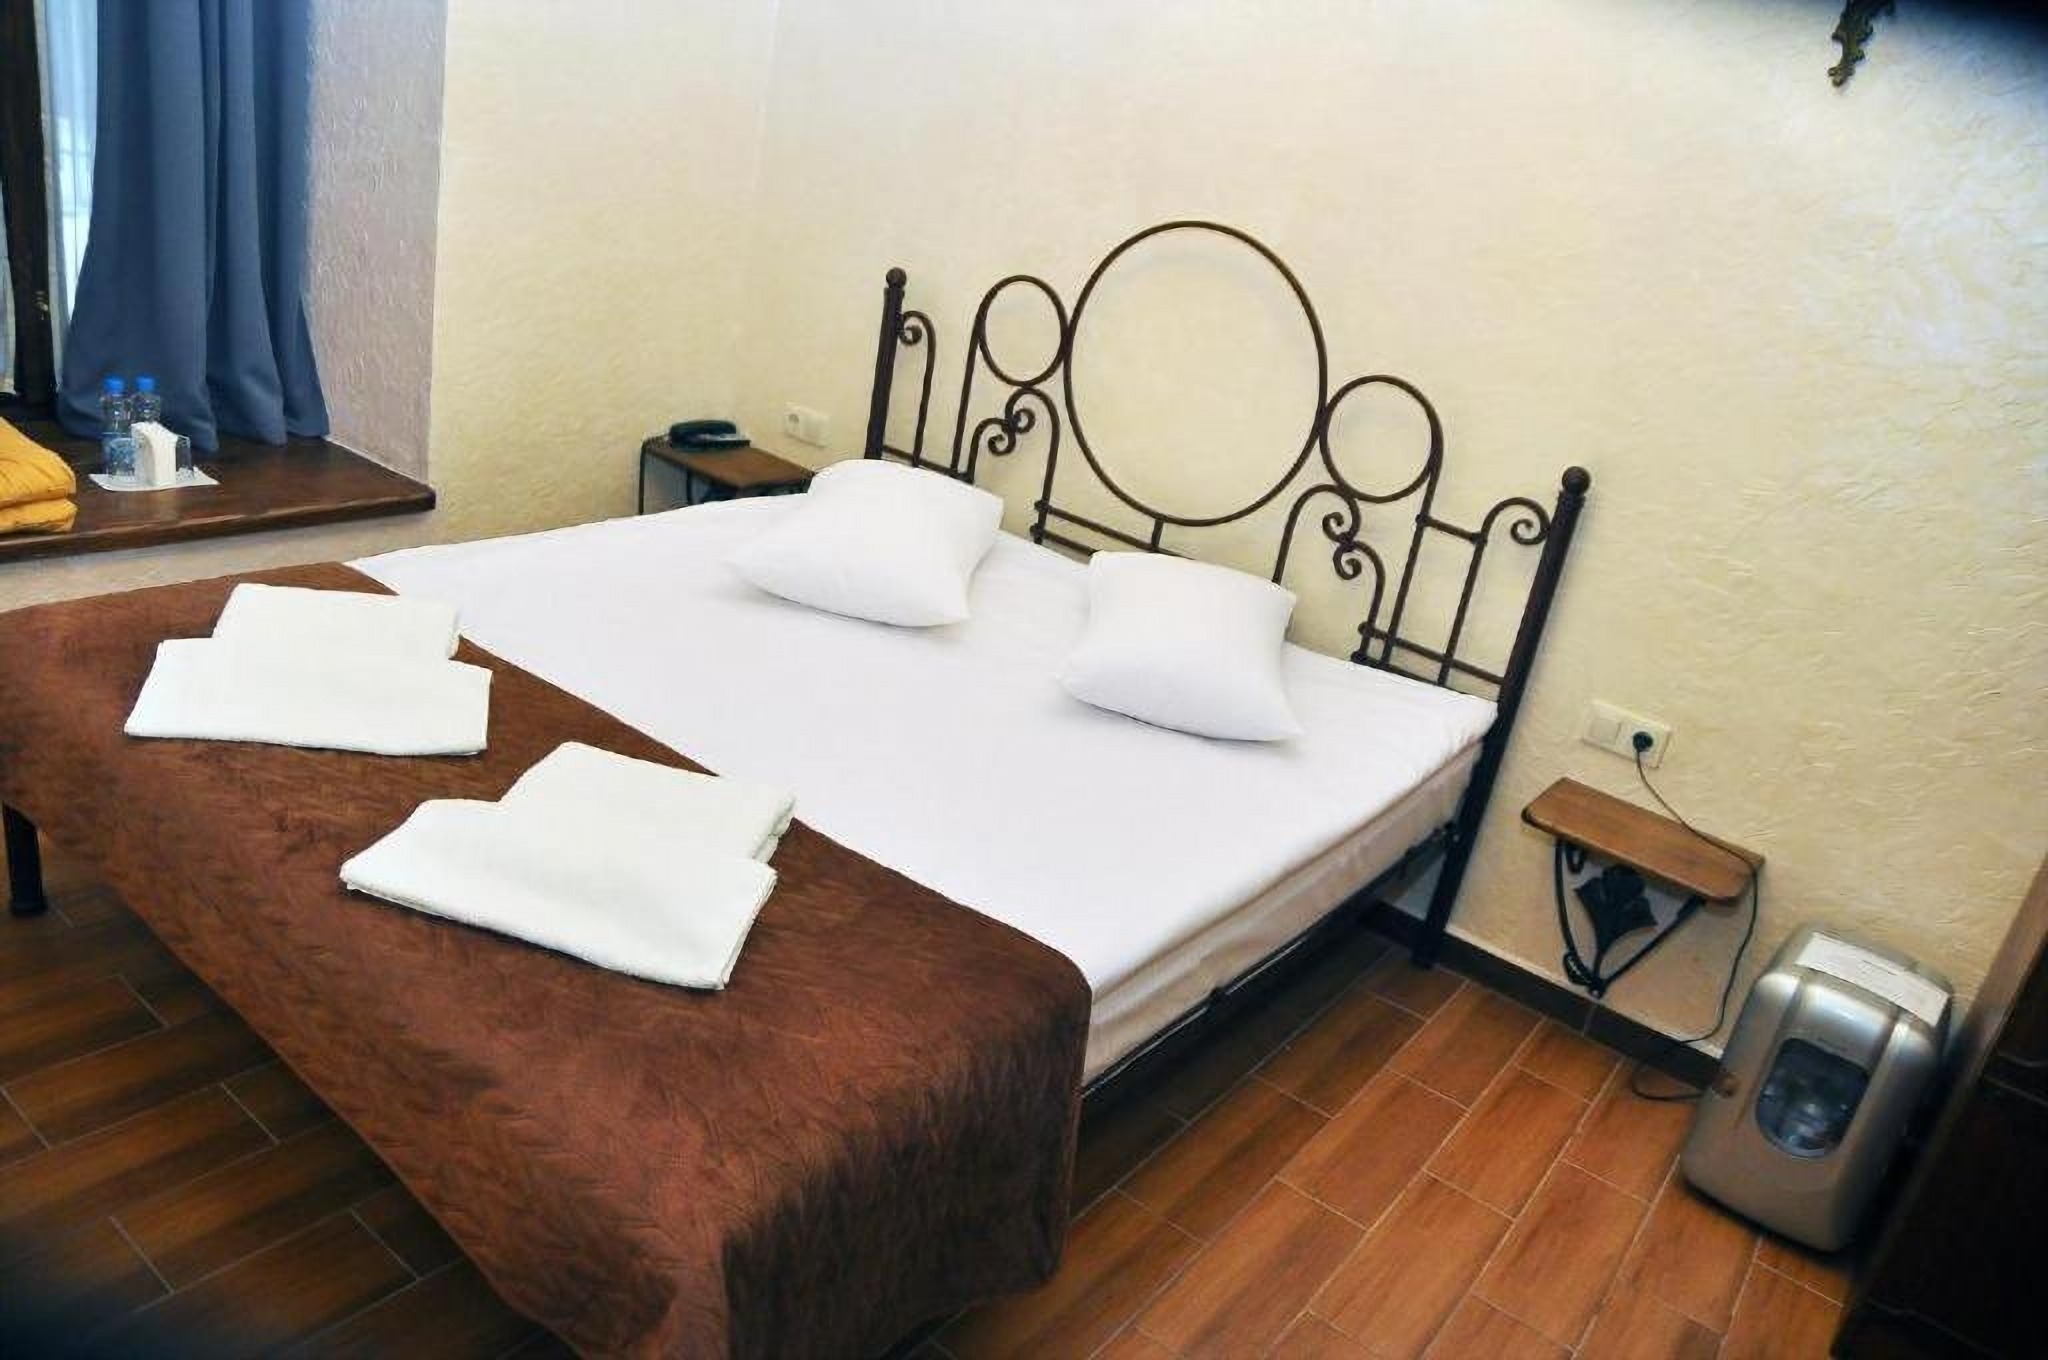 Ліжко в номері в готелі Old Krakow у Львові Україна